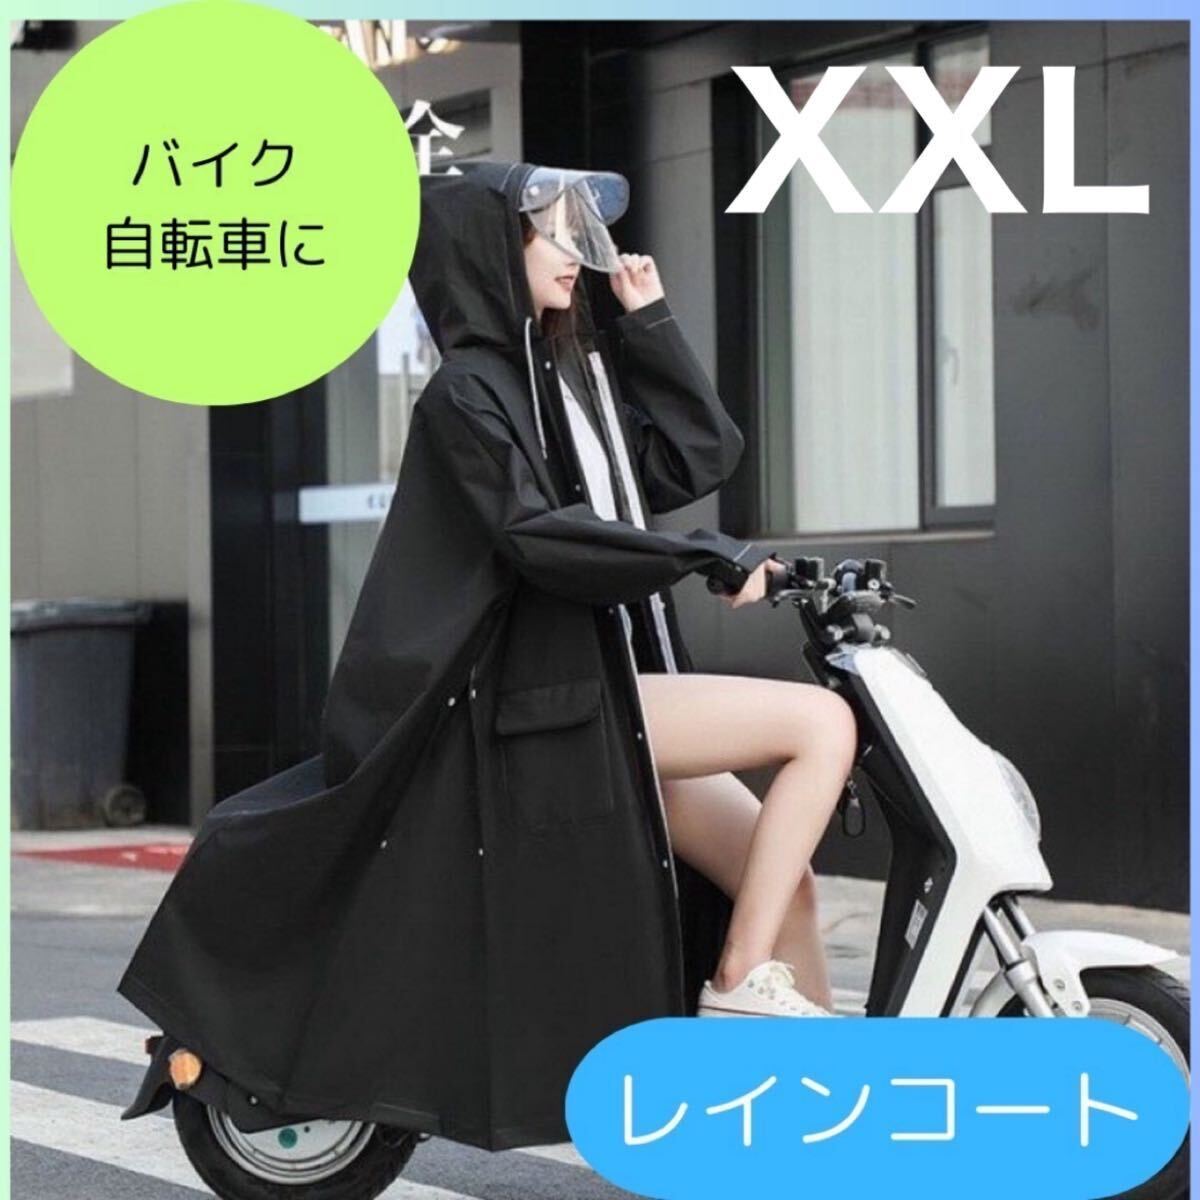 レインコート ポンチョ 男女兼用 雨具 雨合羽 バイク 自転車 カッパ レインウェア 二重つば 黒 XXLの画像1